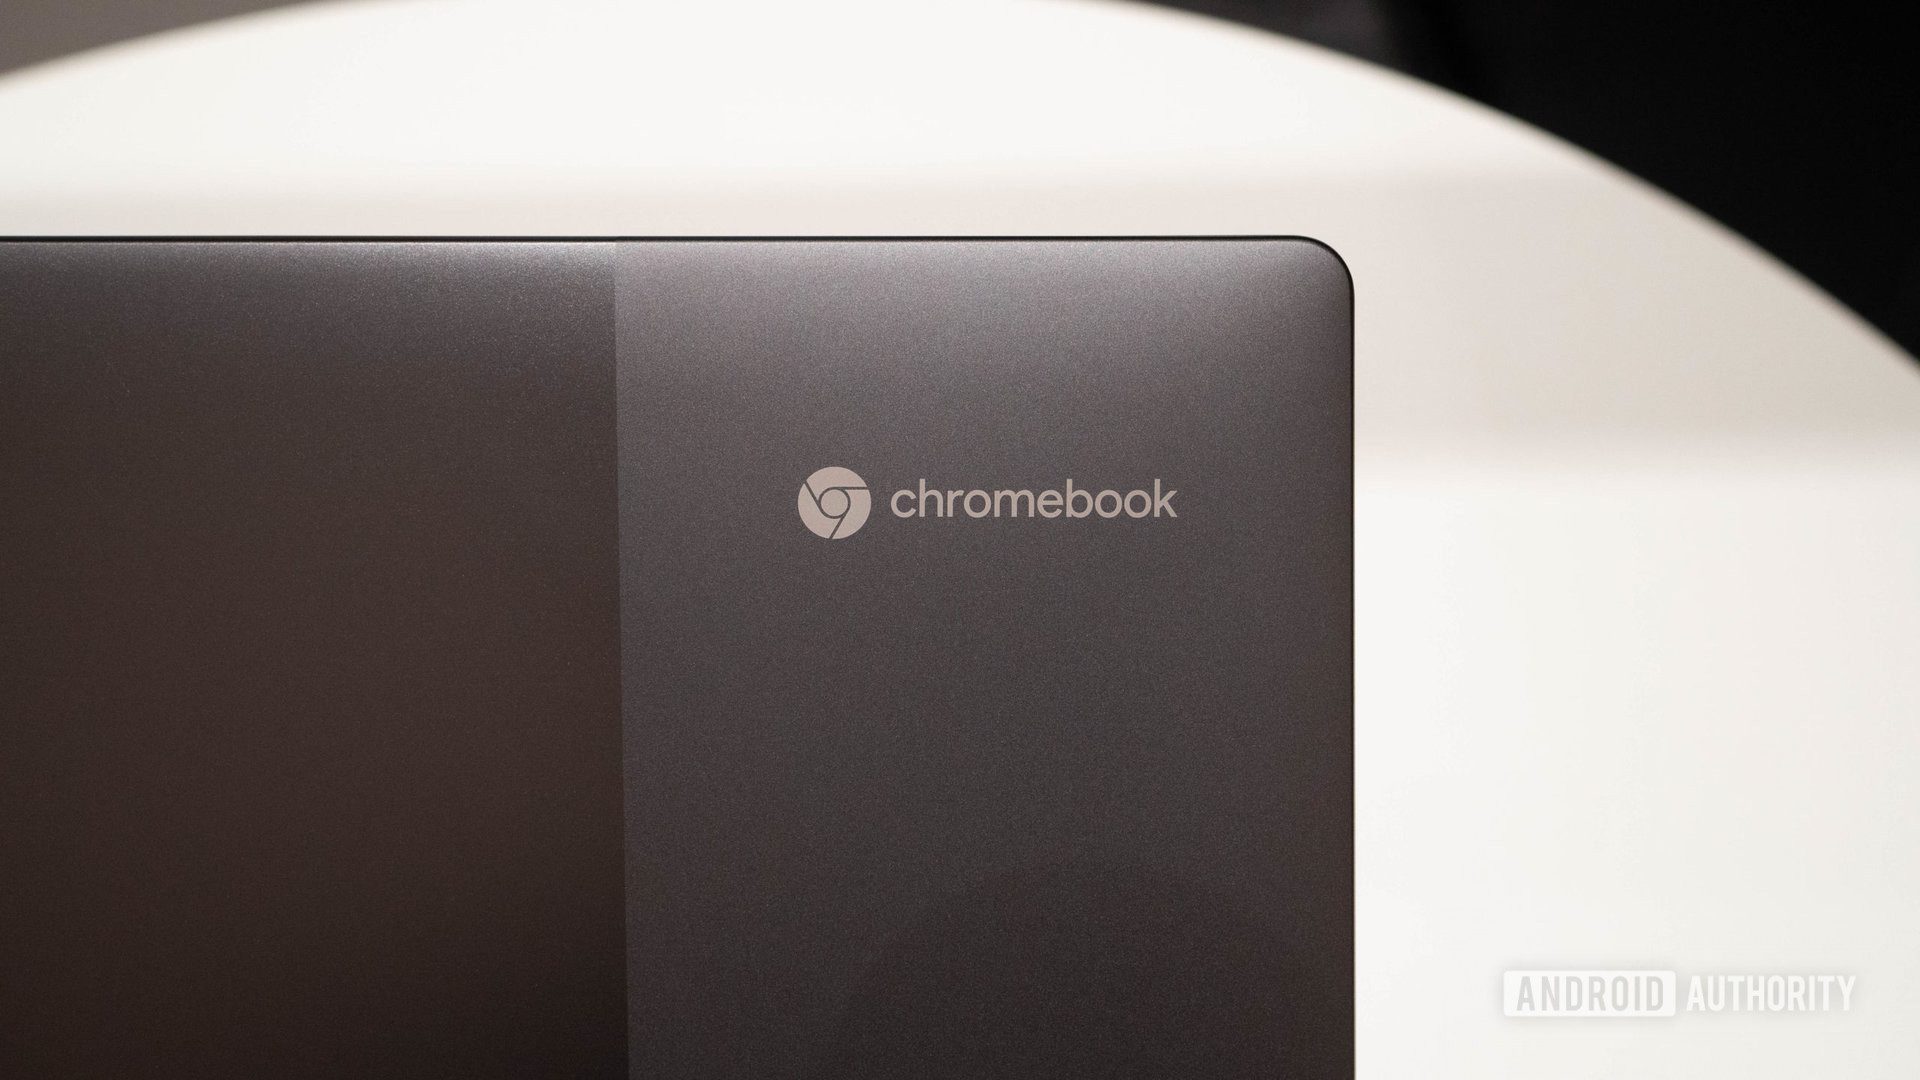 Chrome OS’de çok sayıda düzenli kullanıcı var